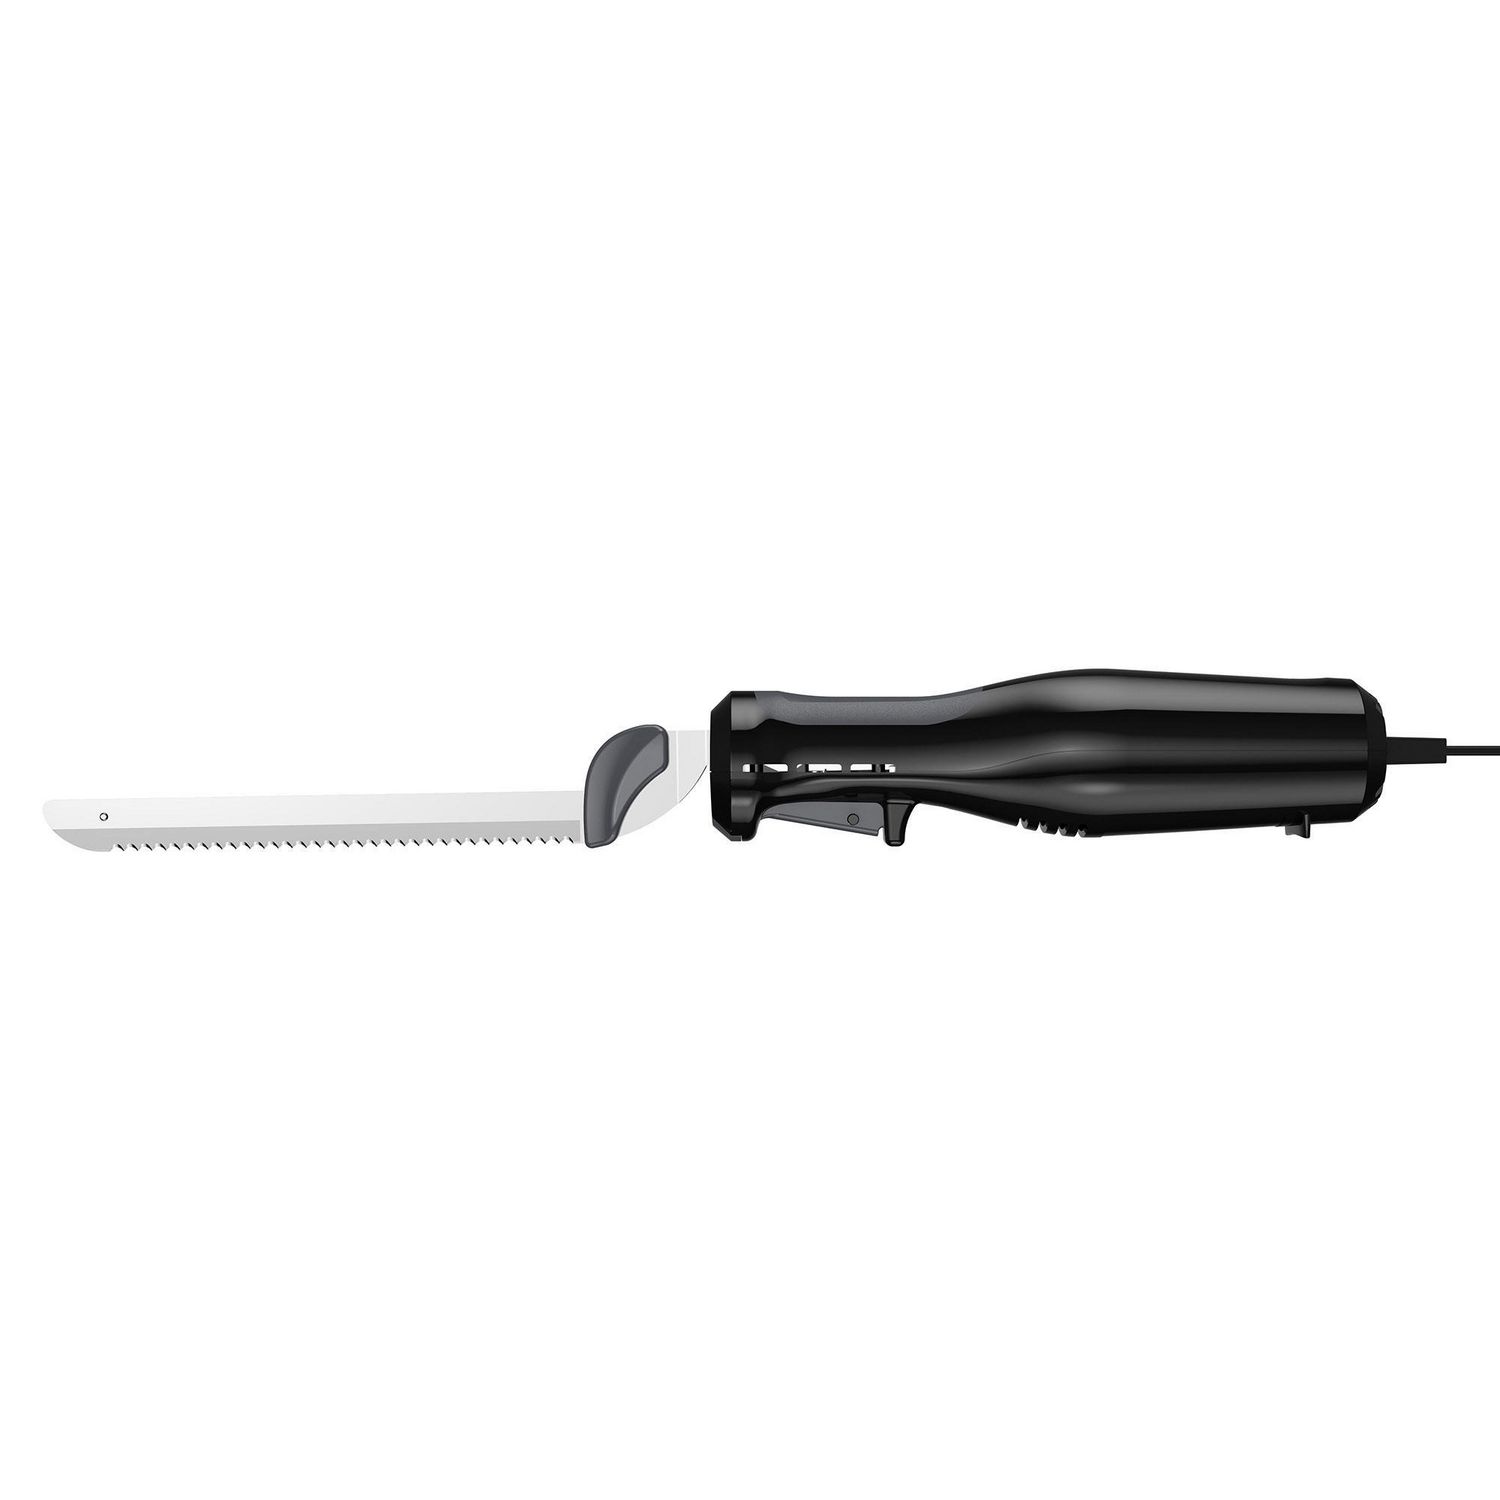 Couteau à pain électrique Evidenter - Zwart - Sans fil - Coupe pain  ergonomique 